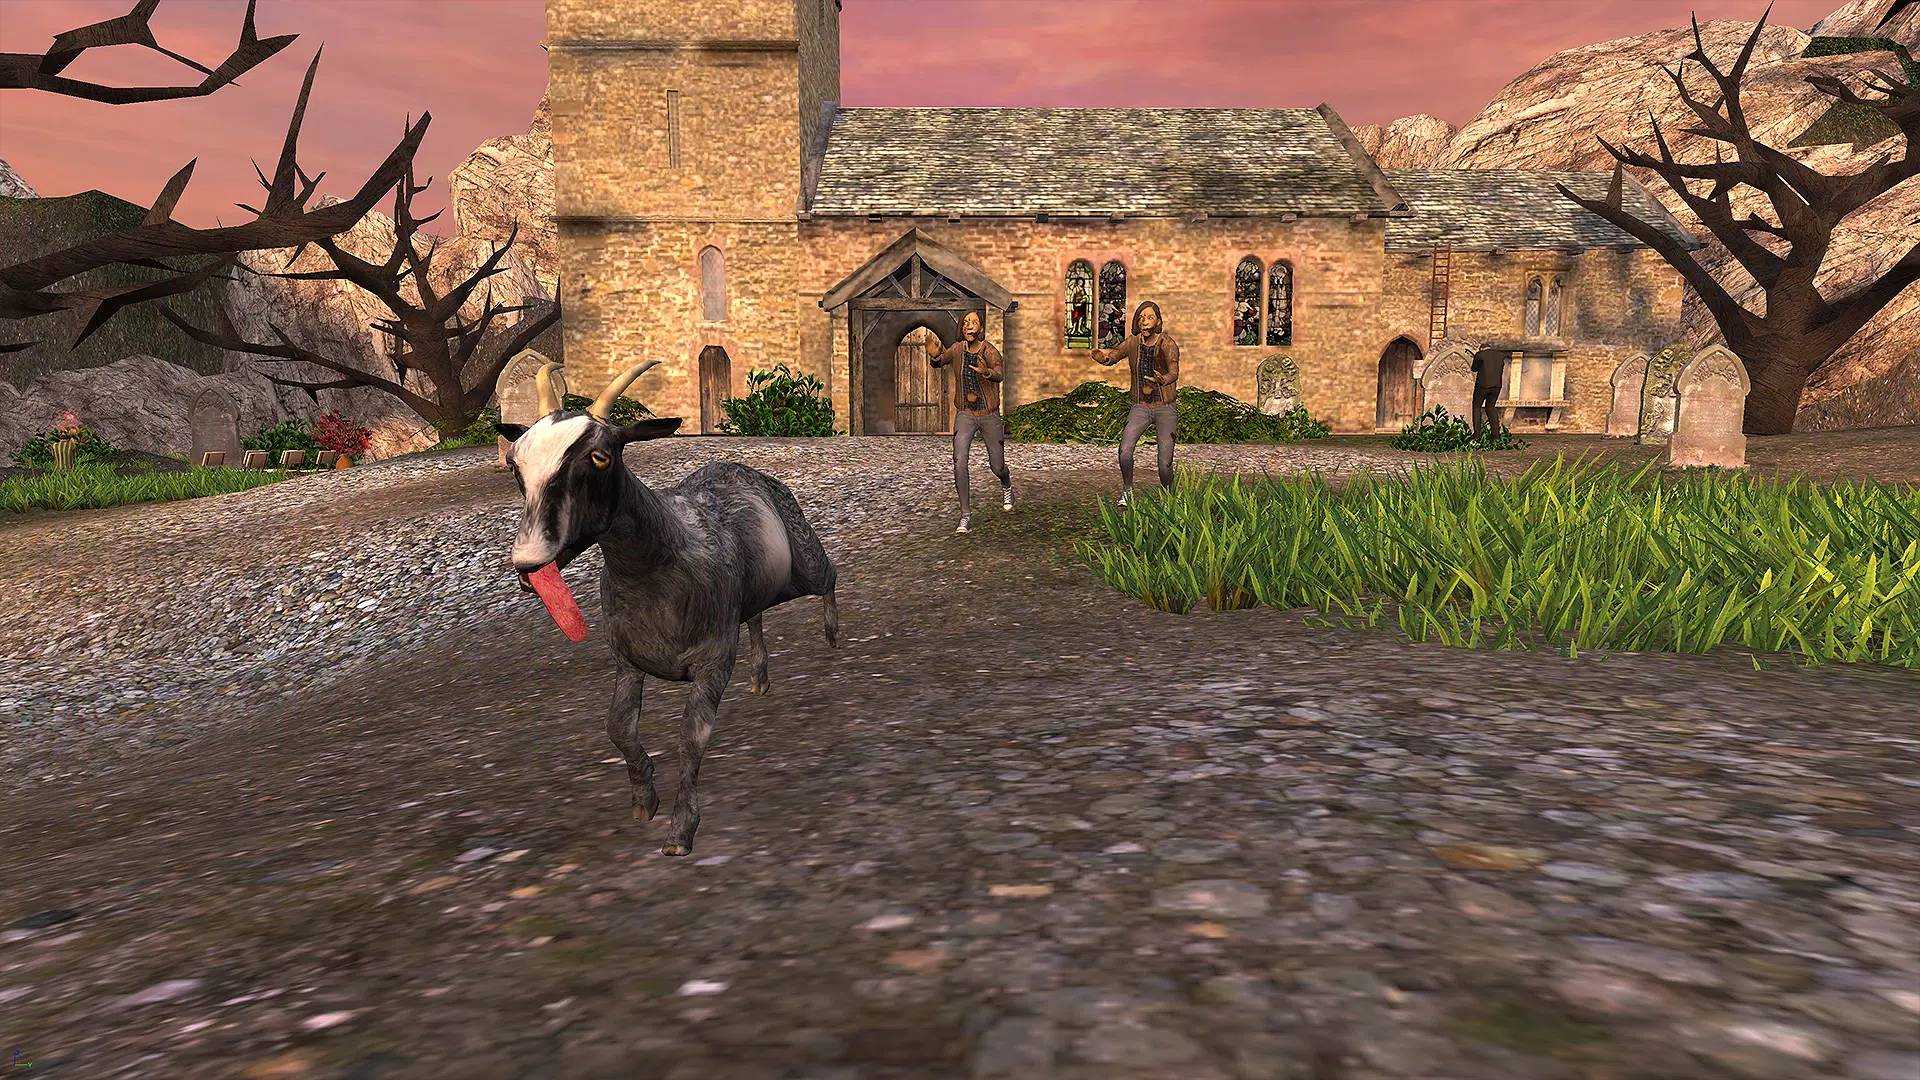 Sandbox-Spiele: Eine Ziege rennt auf die Kamera zu